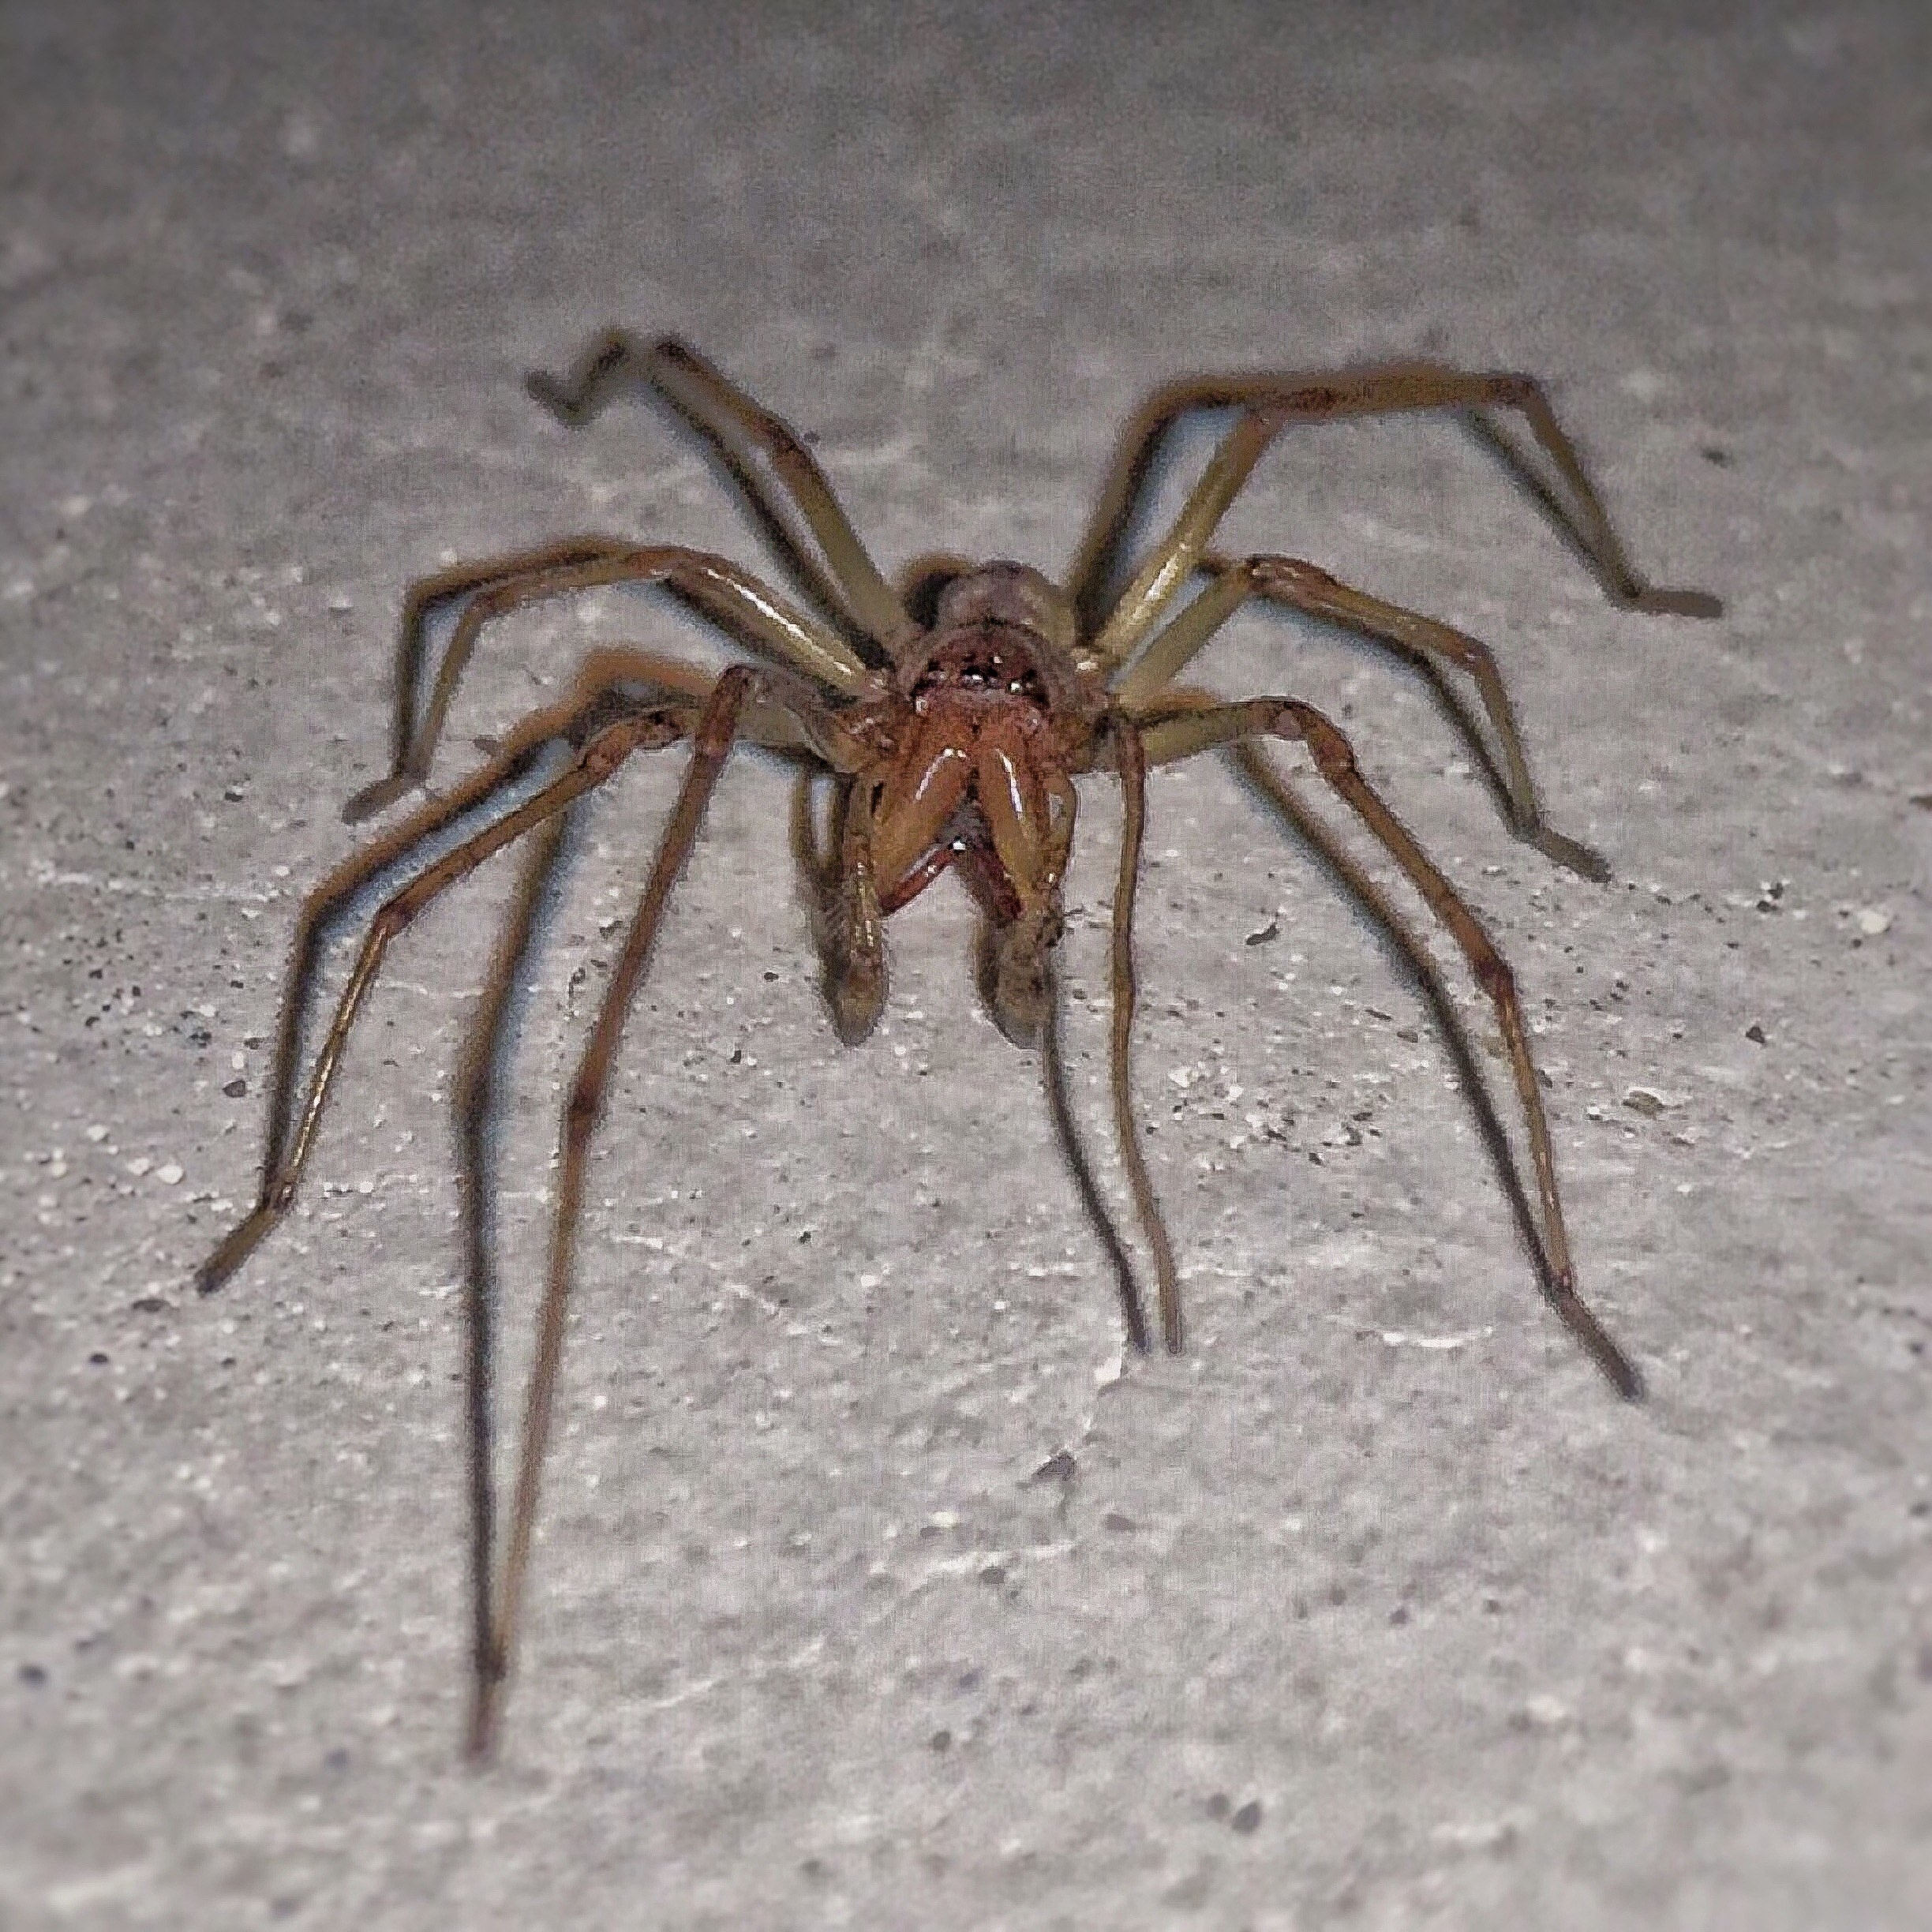 Huge spider